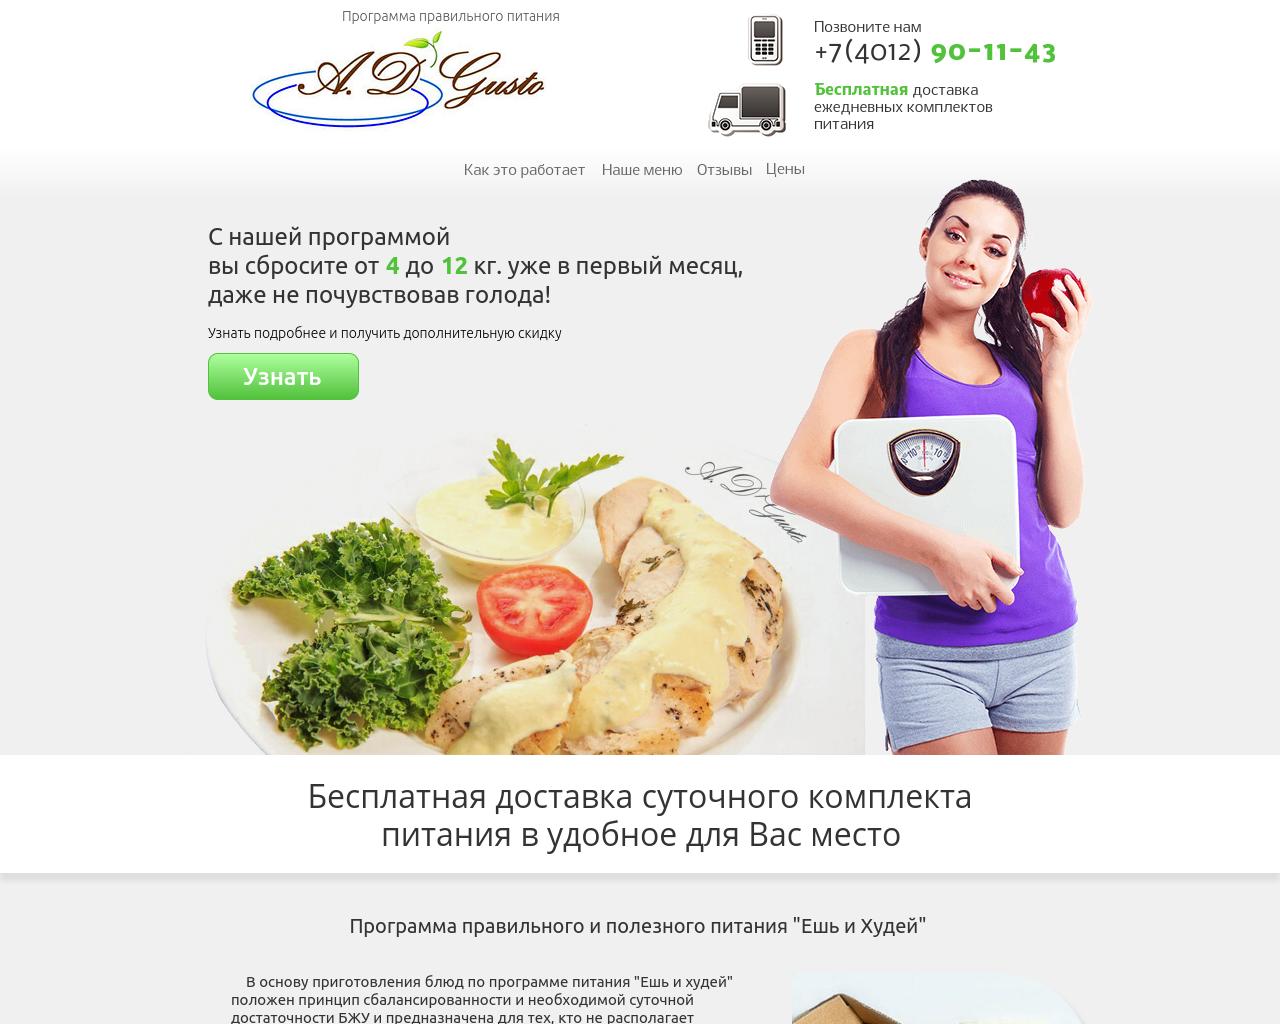 Изображение сайта adgusto.ru в разрешении 1280x1024